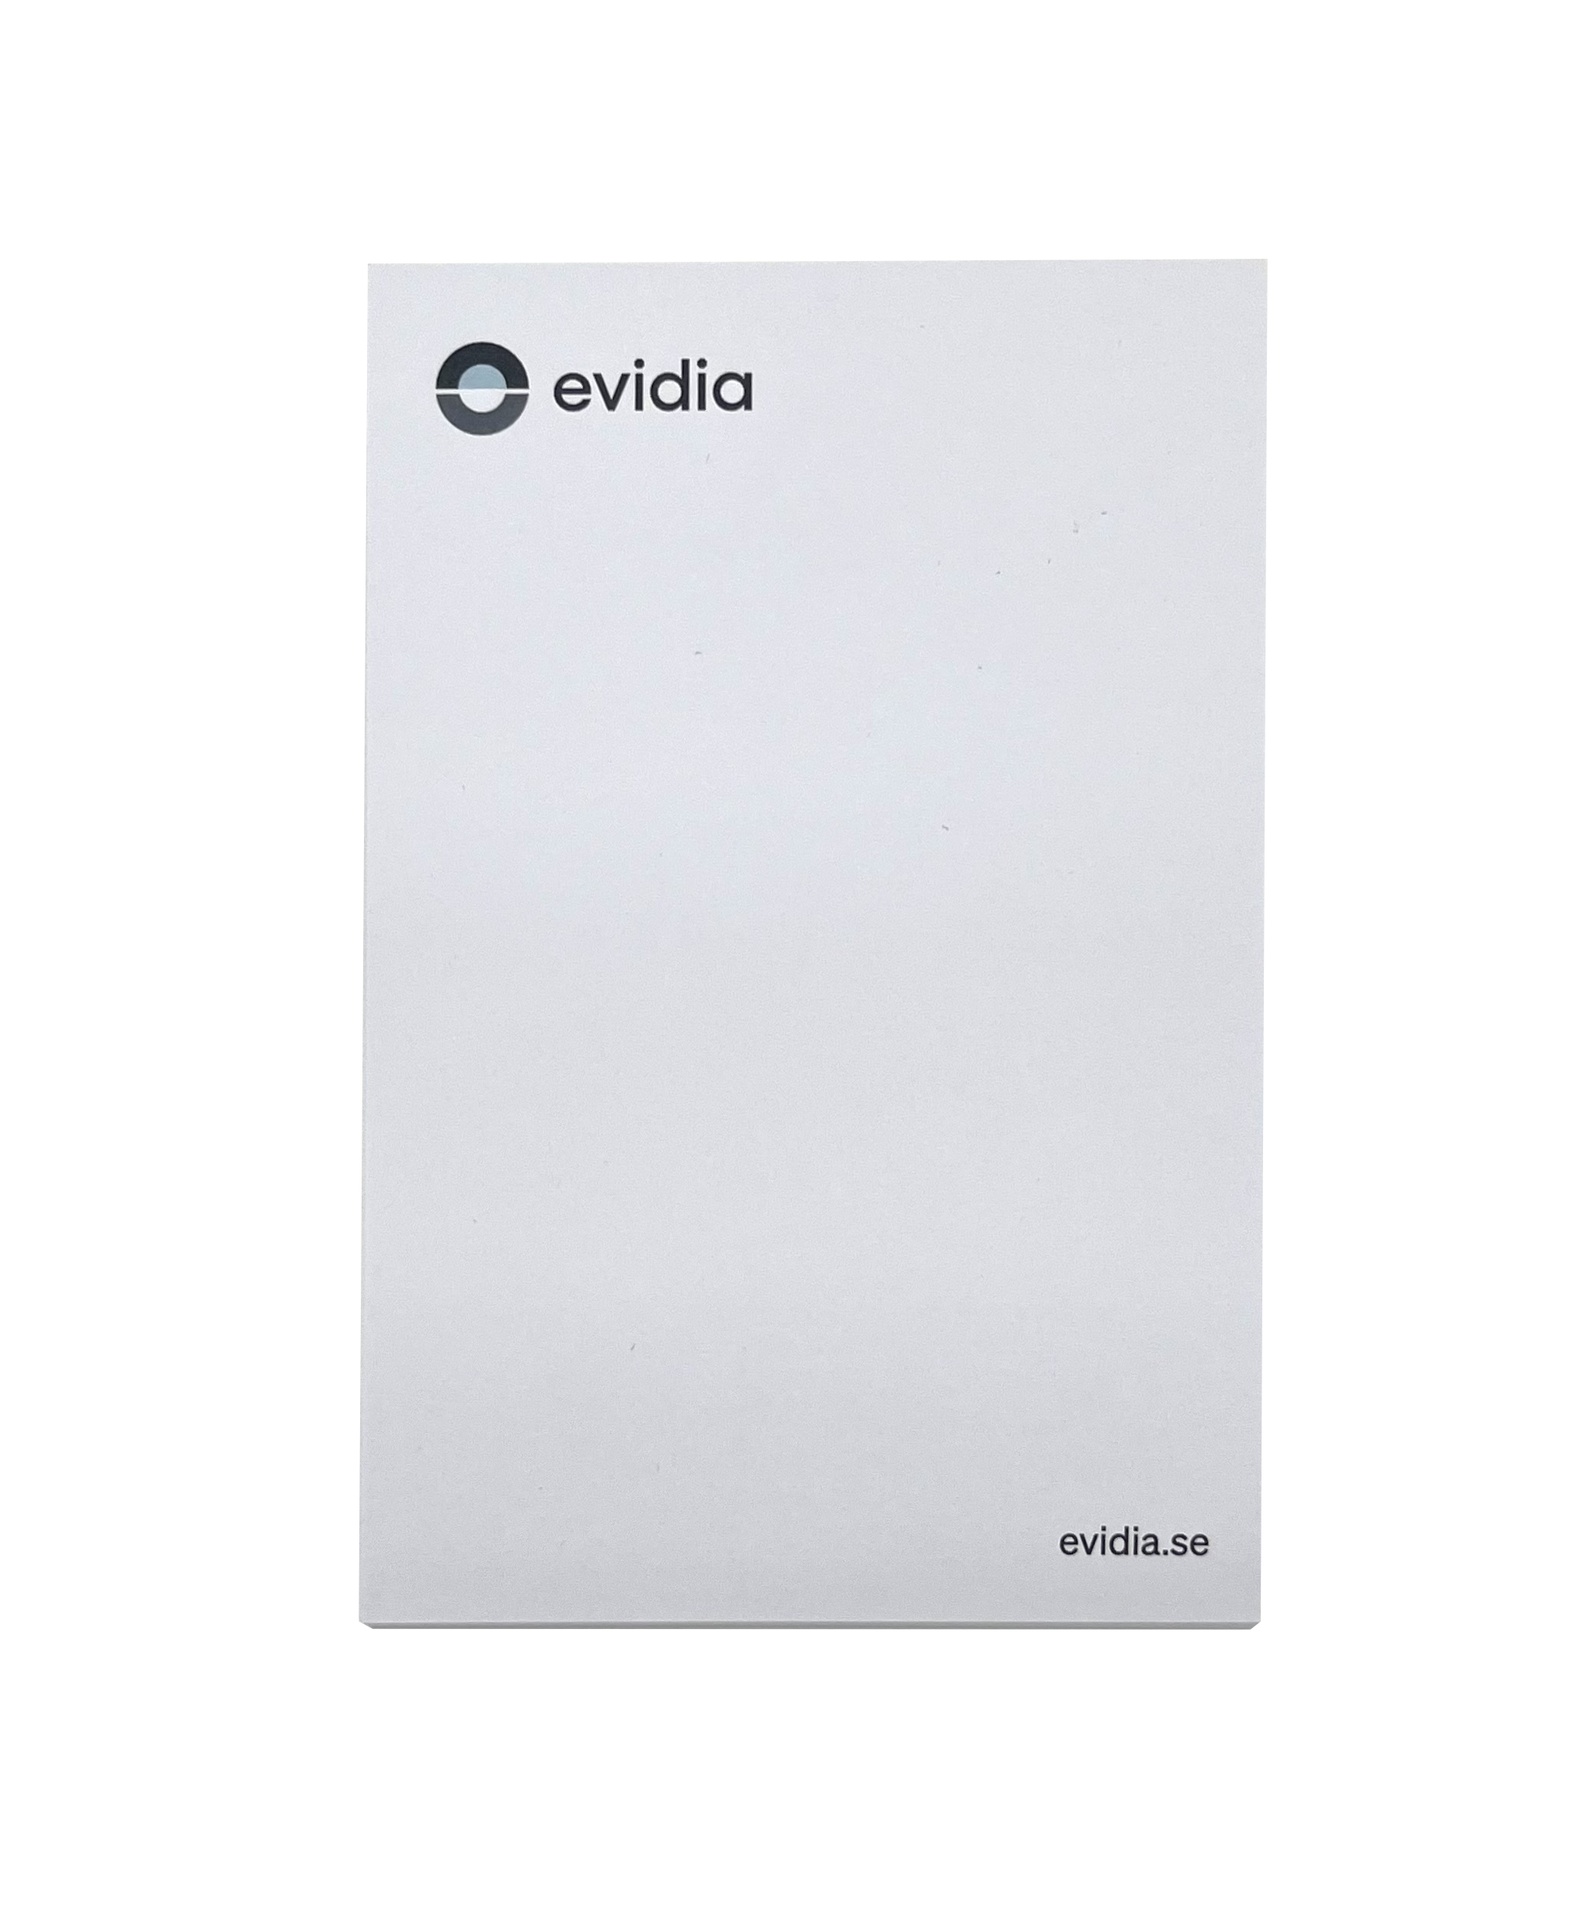 [EEEVID002] Häftisblock Evidia 100x150mm 50blad/block 10block/fp